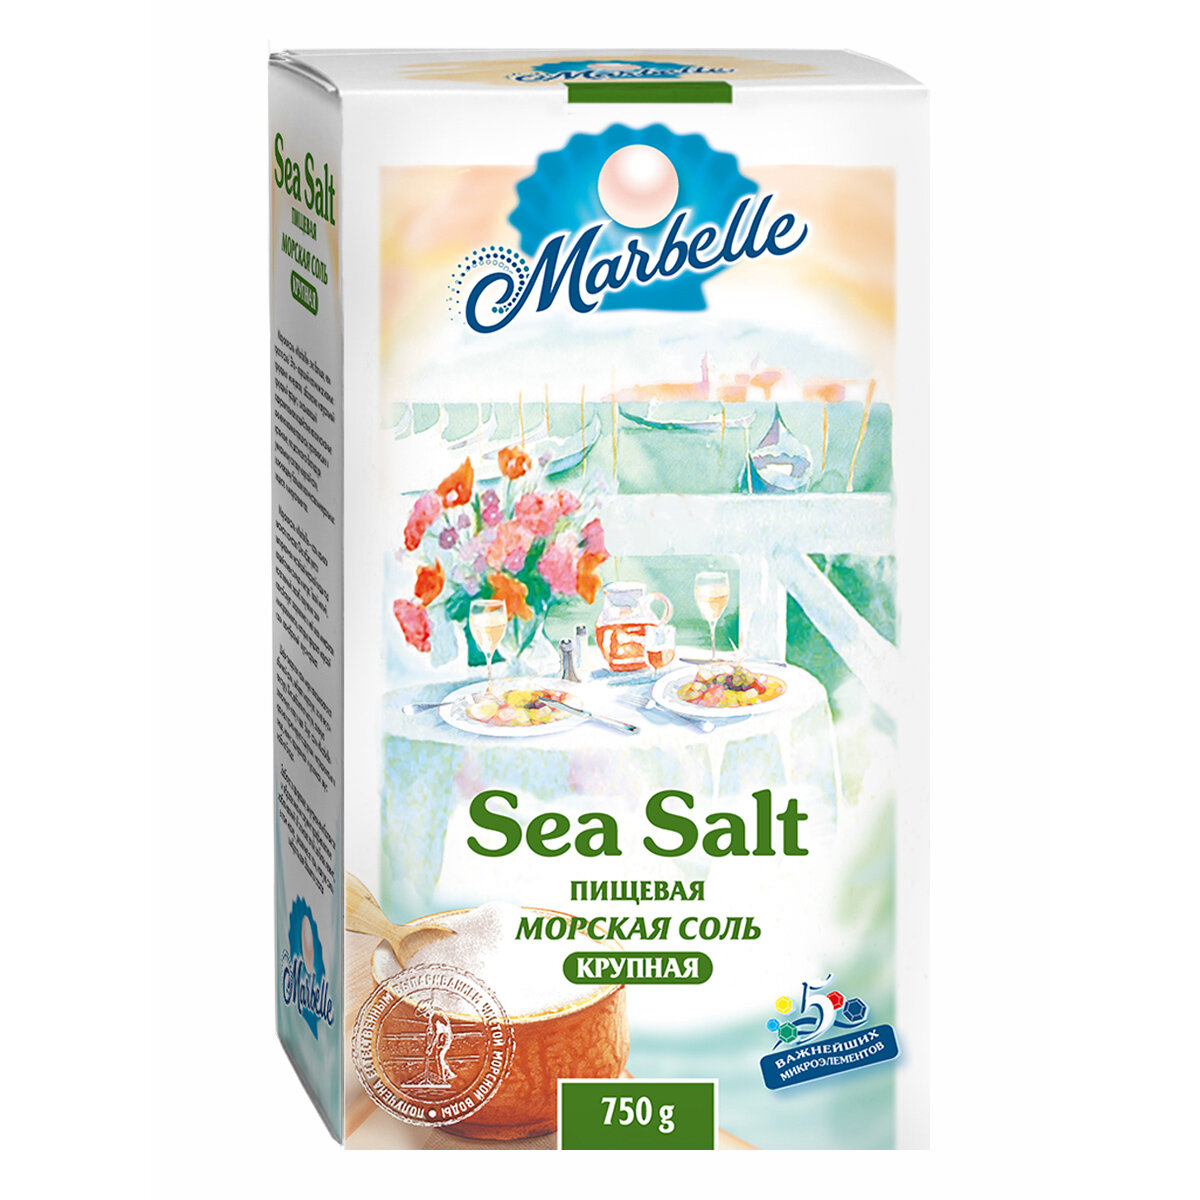 Соль морская натуральная пищевая, крупный помол, Marbelle, 750 г